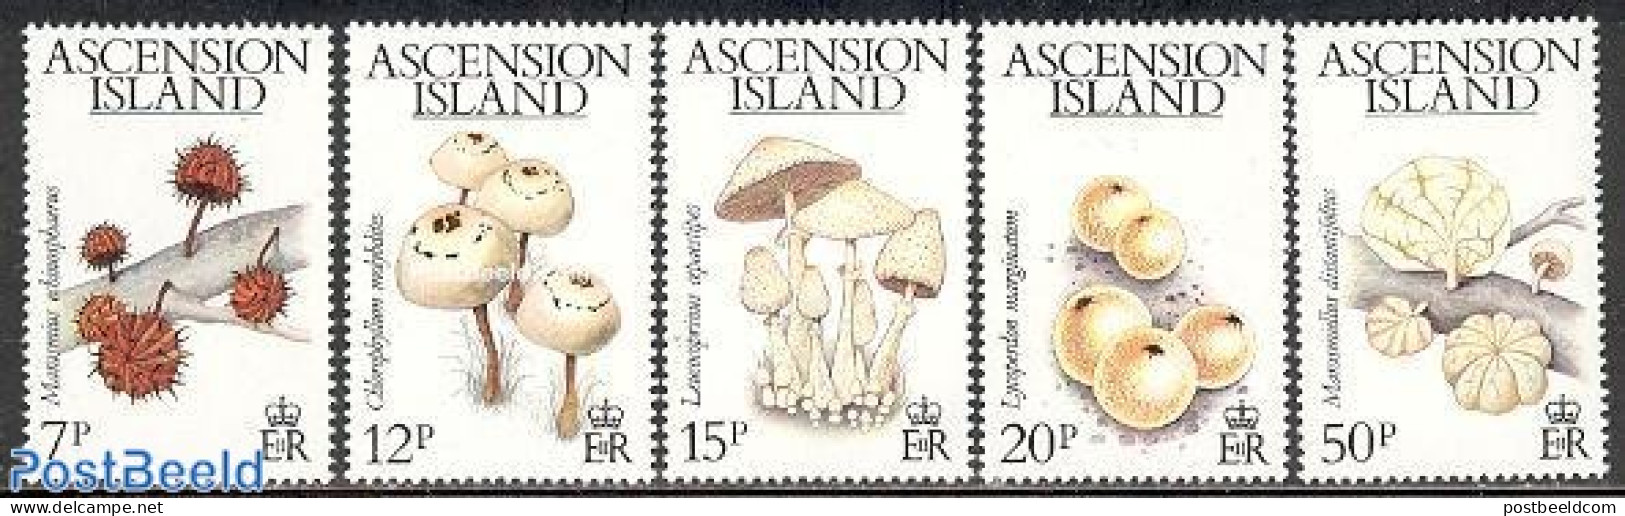 Ascension 1983 Mushrooms 5v, Mint NH, Nature - Mushrooms - Pilze